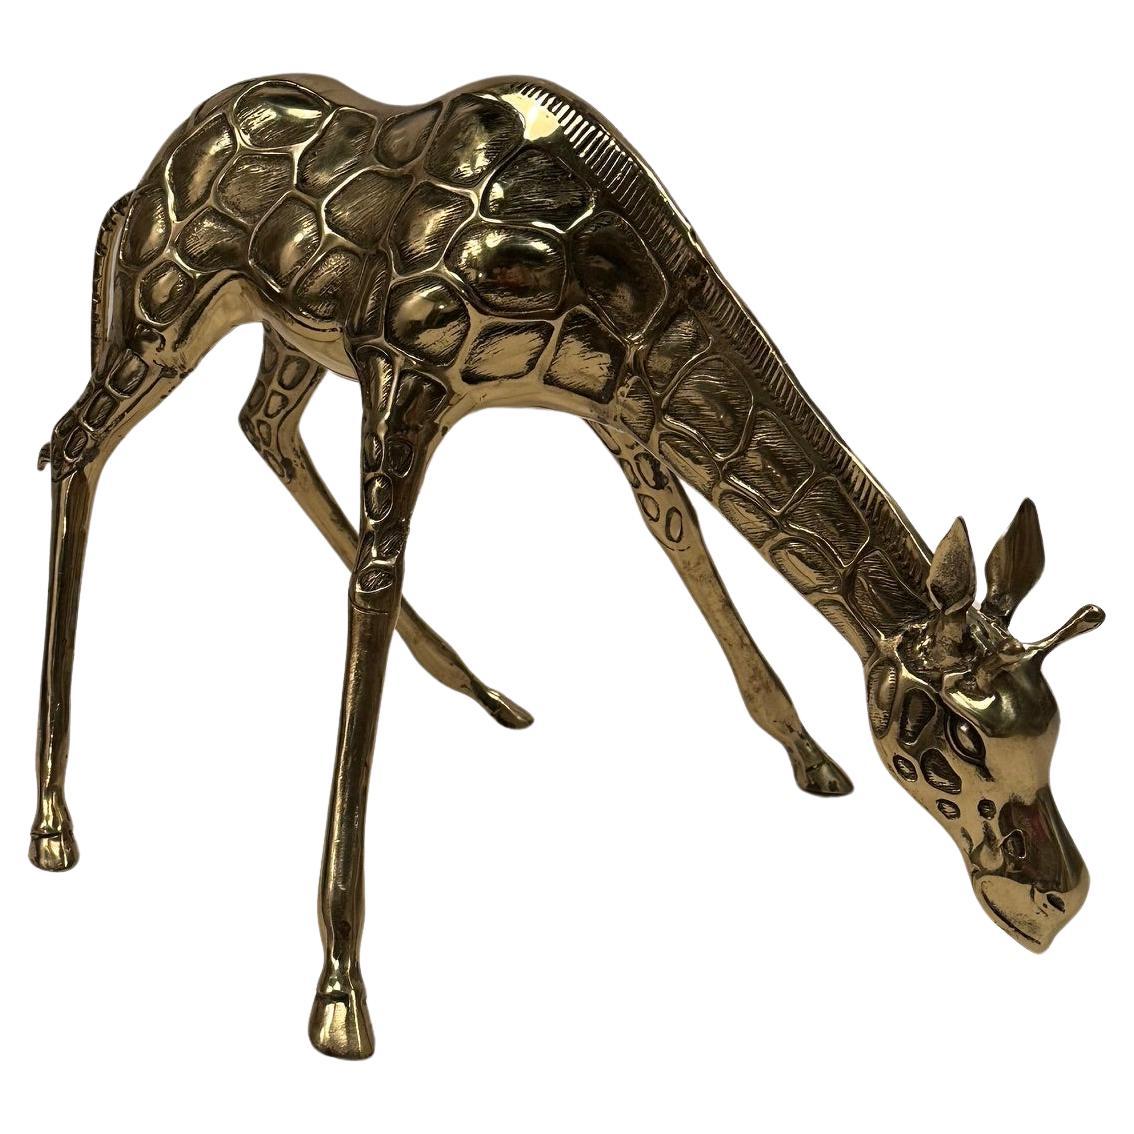 Nicely Cast Brass Giraffe Sculpture For Sale